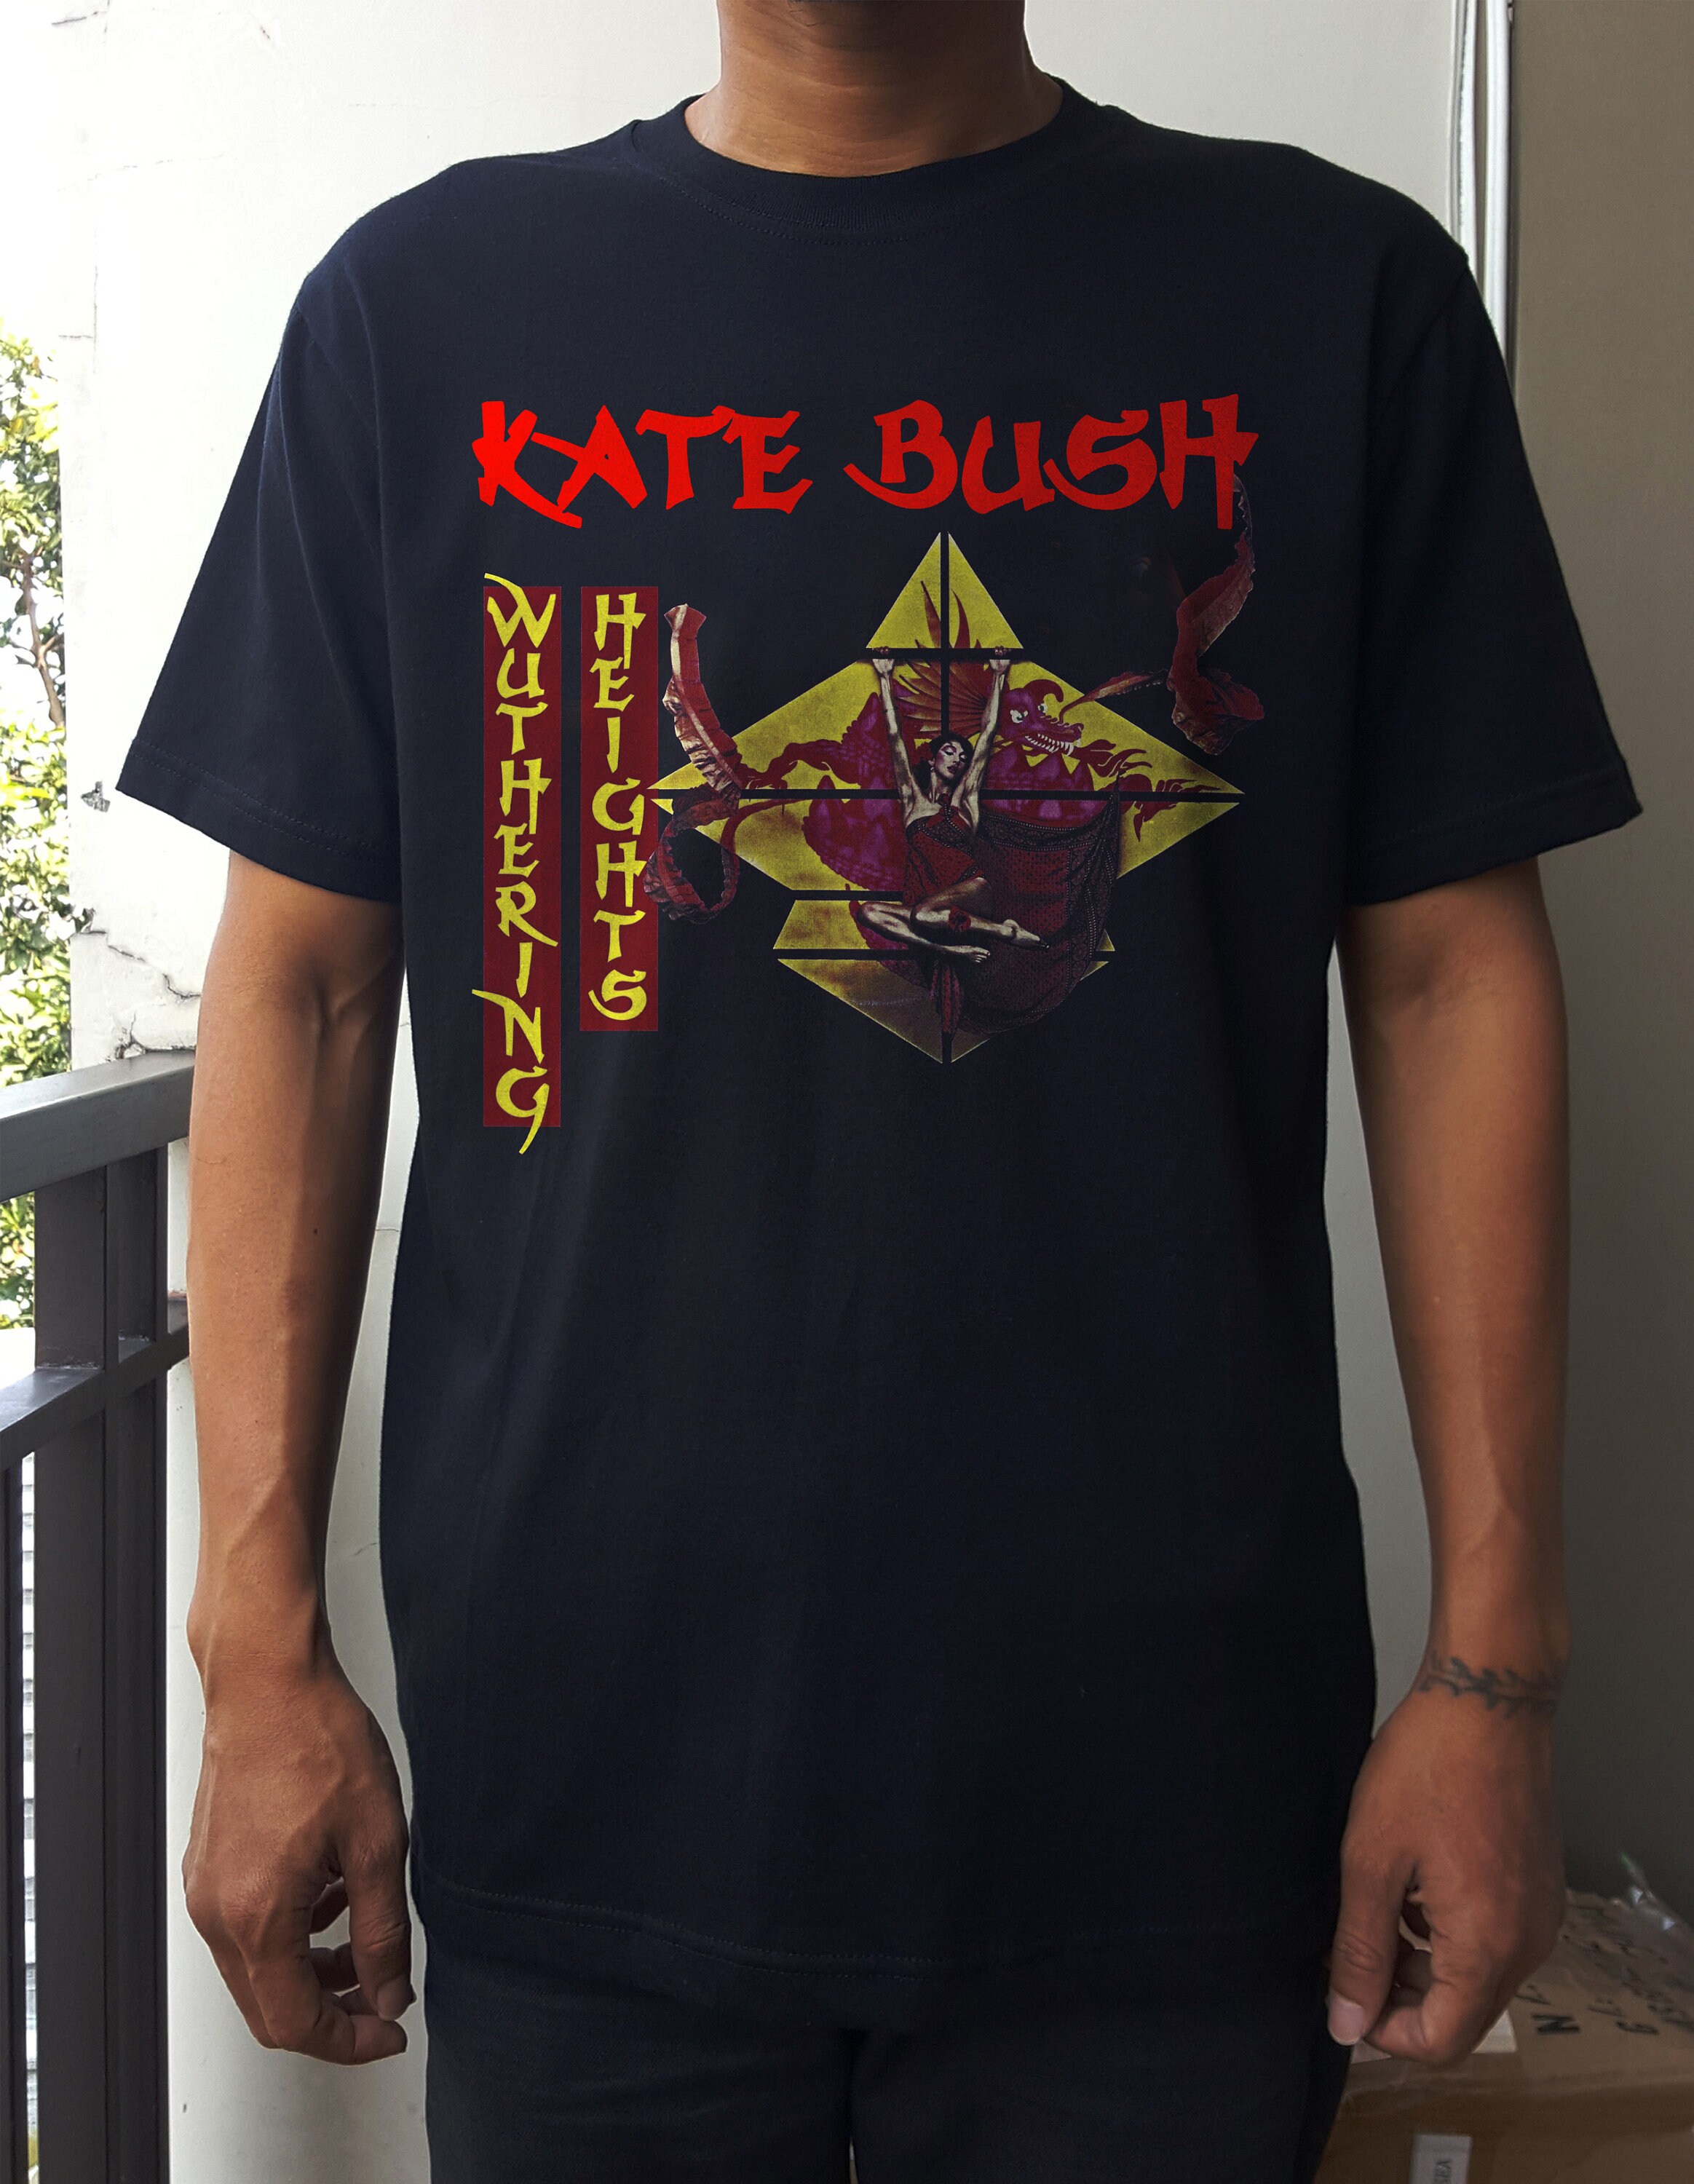 kate bush t shirt